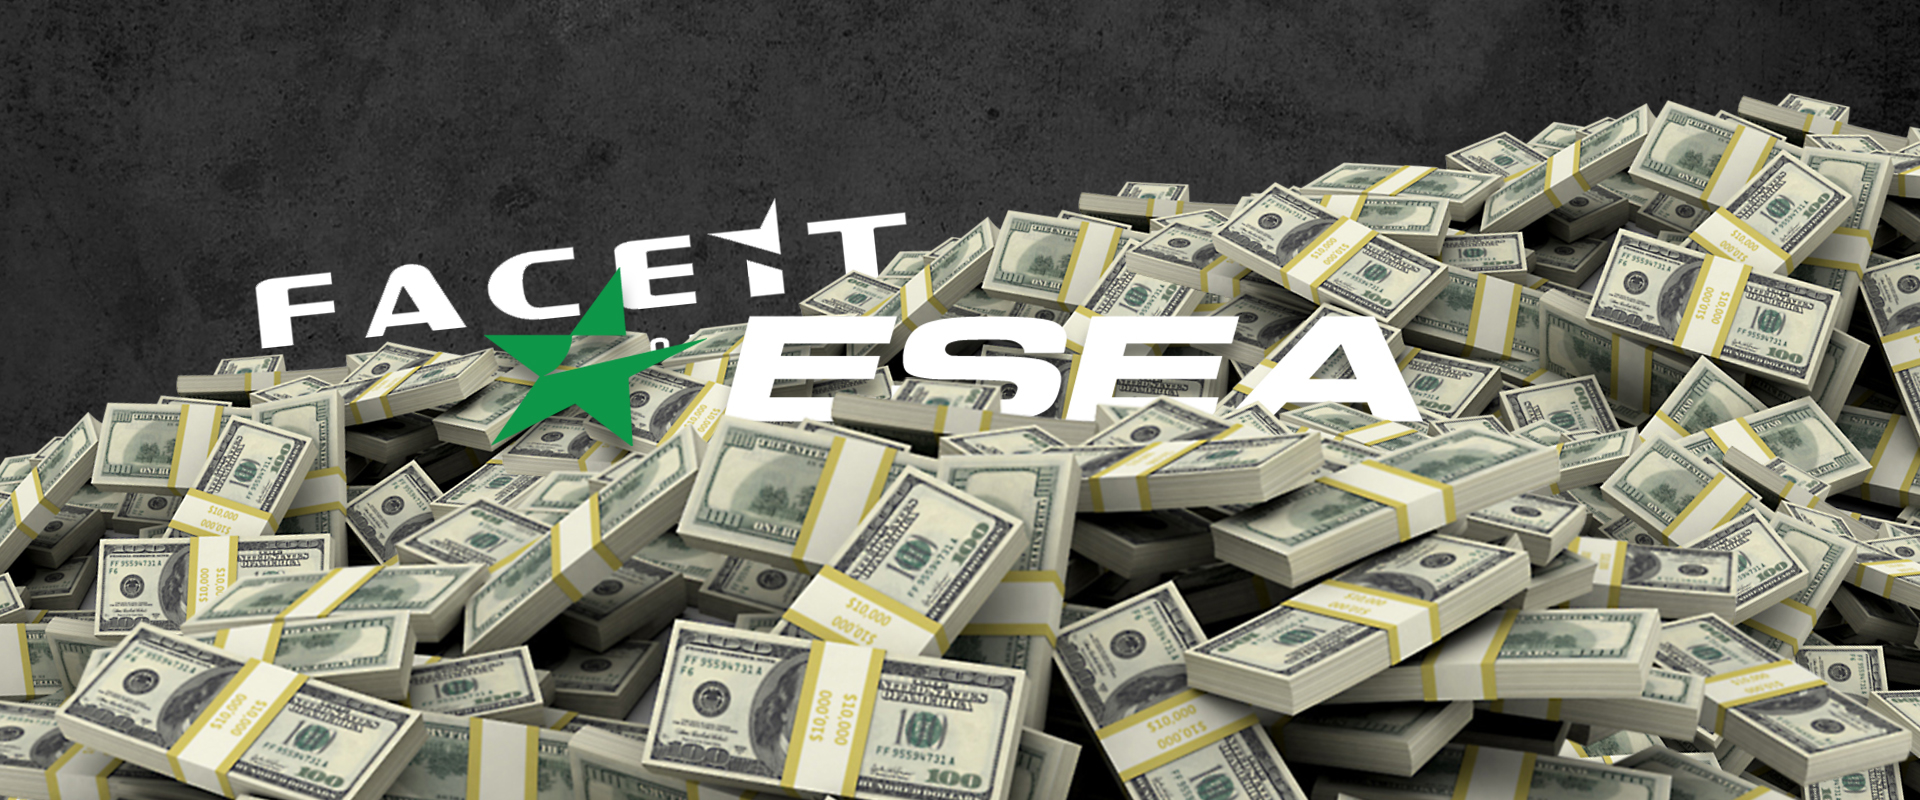 Az ESEA kétezer dollárt fizet minden profi játékosnak, hogy ne a FACEIT-en játszanak